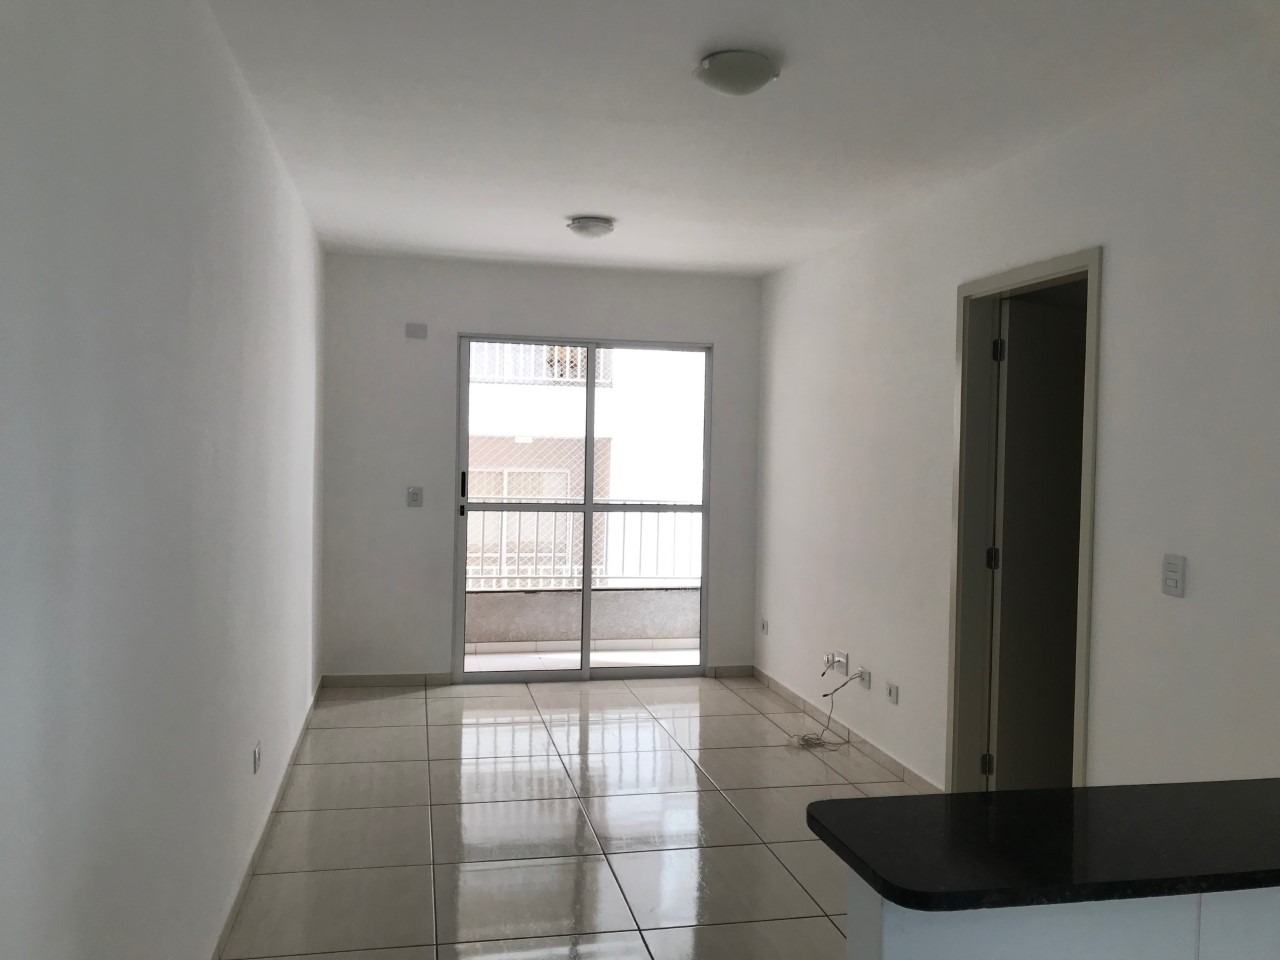 Apartamento para comprar, 3 quartos, 1 suíte, no bairro Jardim Caxambu em Piracicaba - SP